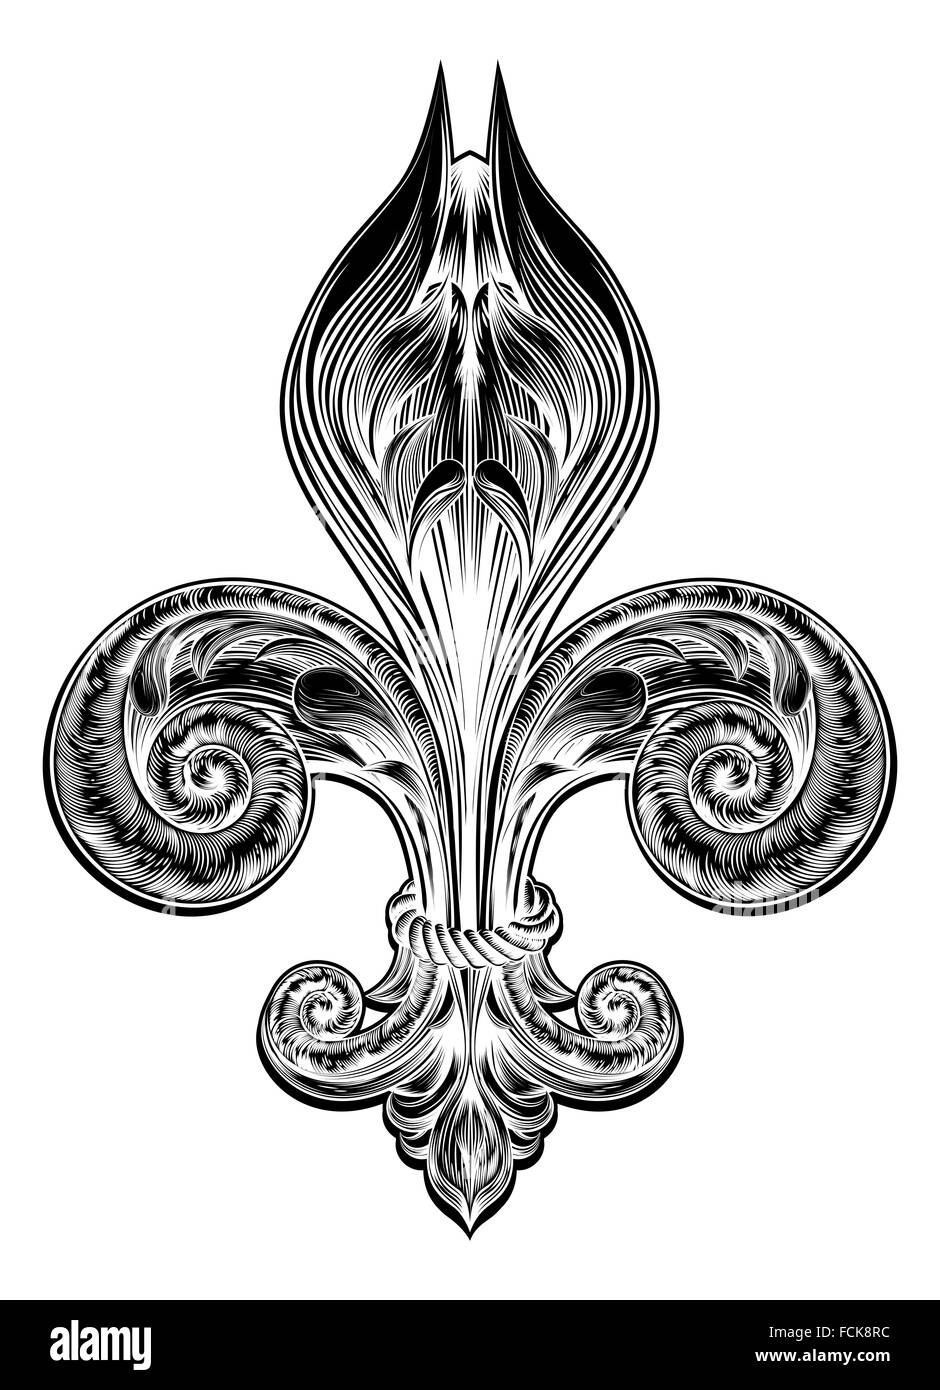 Illustrazione originale di un Fleur de Lis design decorativo o simbolo araldico in un vintage stile woodblock Foto Stock